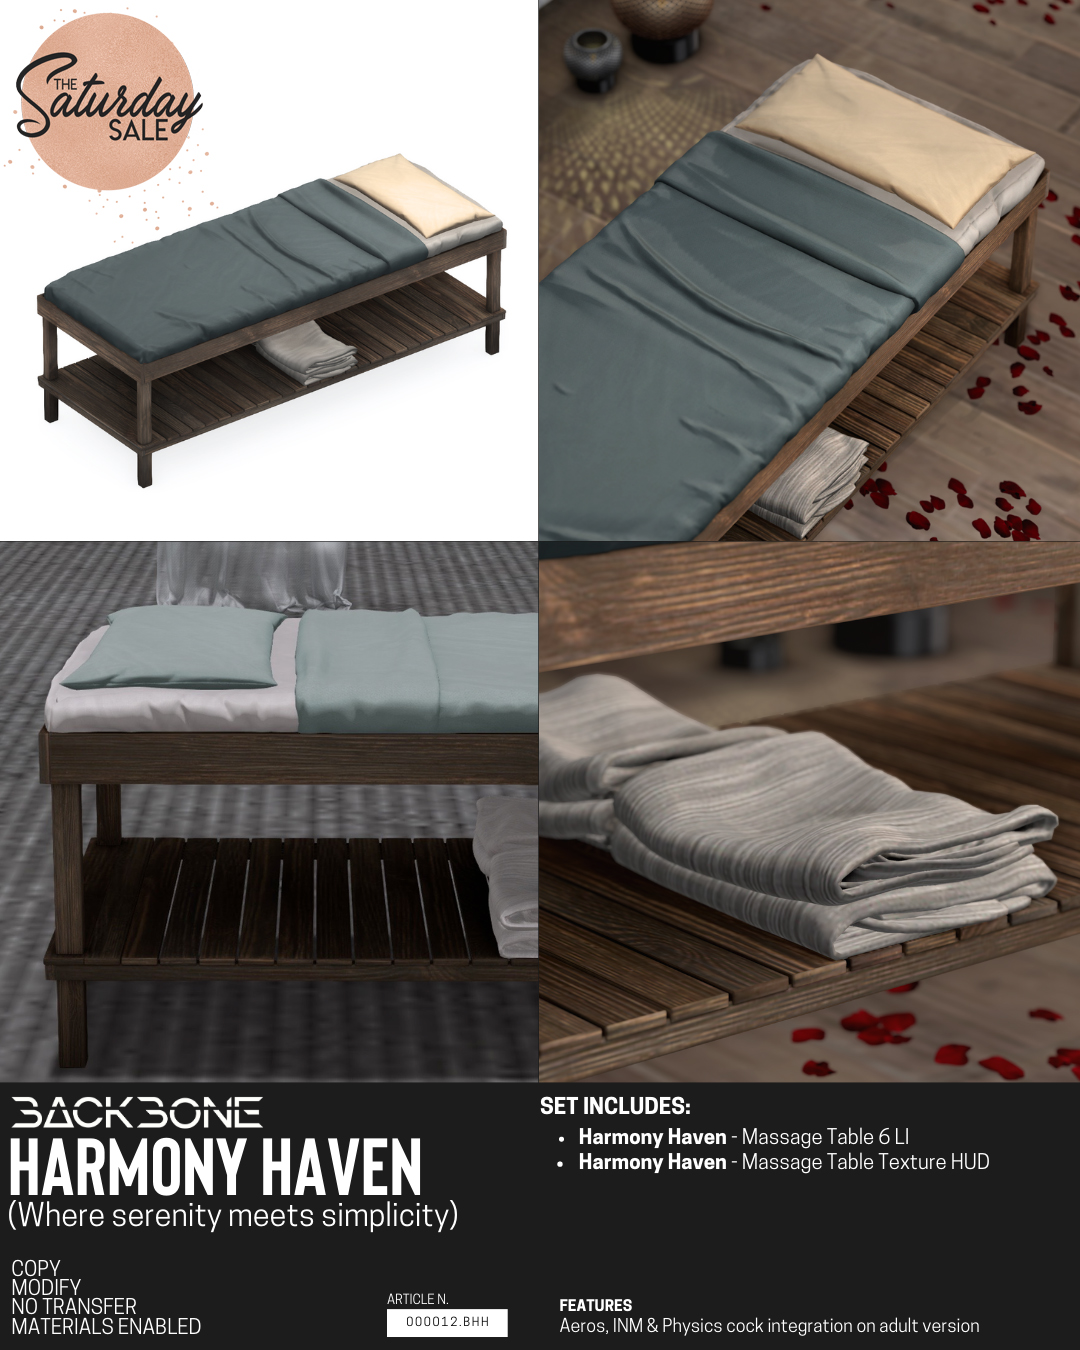 BackBone – Harmony Haven